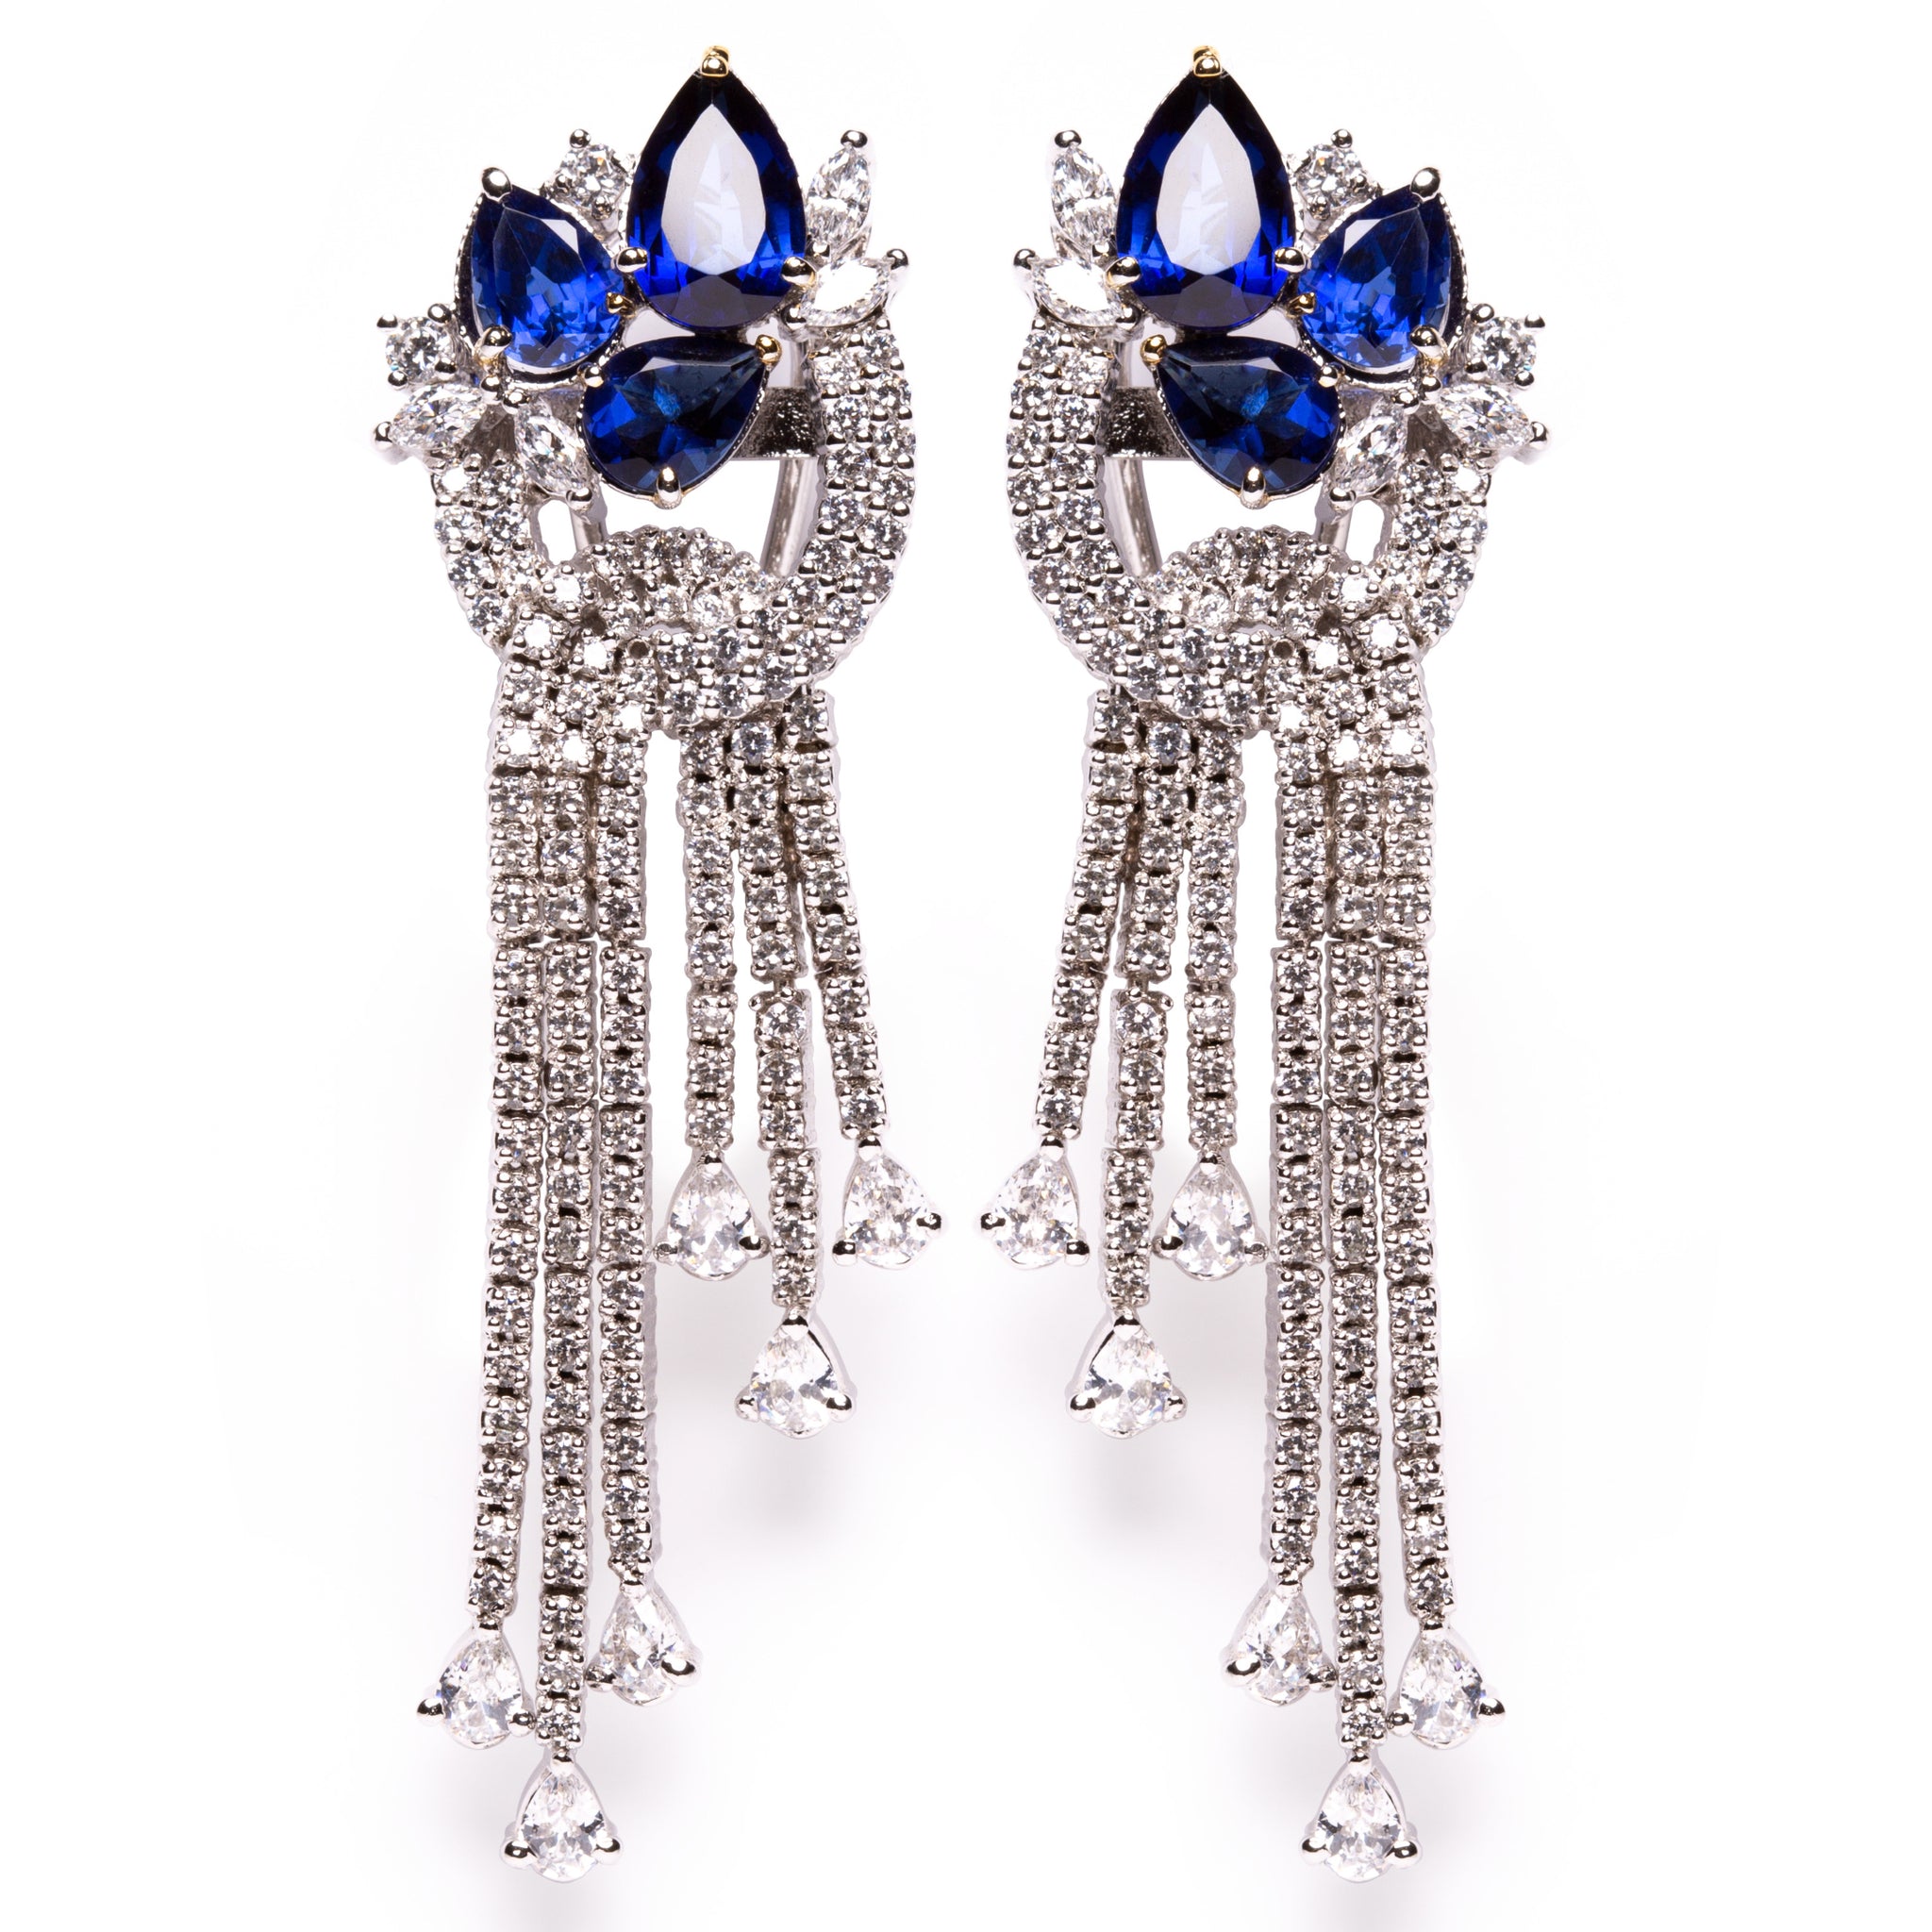 Sapphire & diamond high grade cubic zirconia silver chandelier earrings